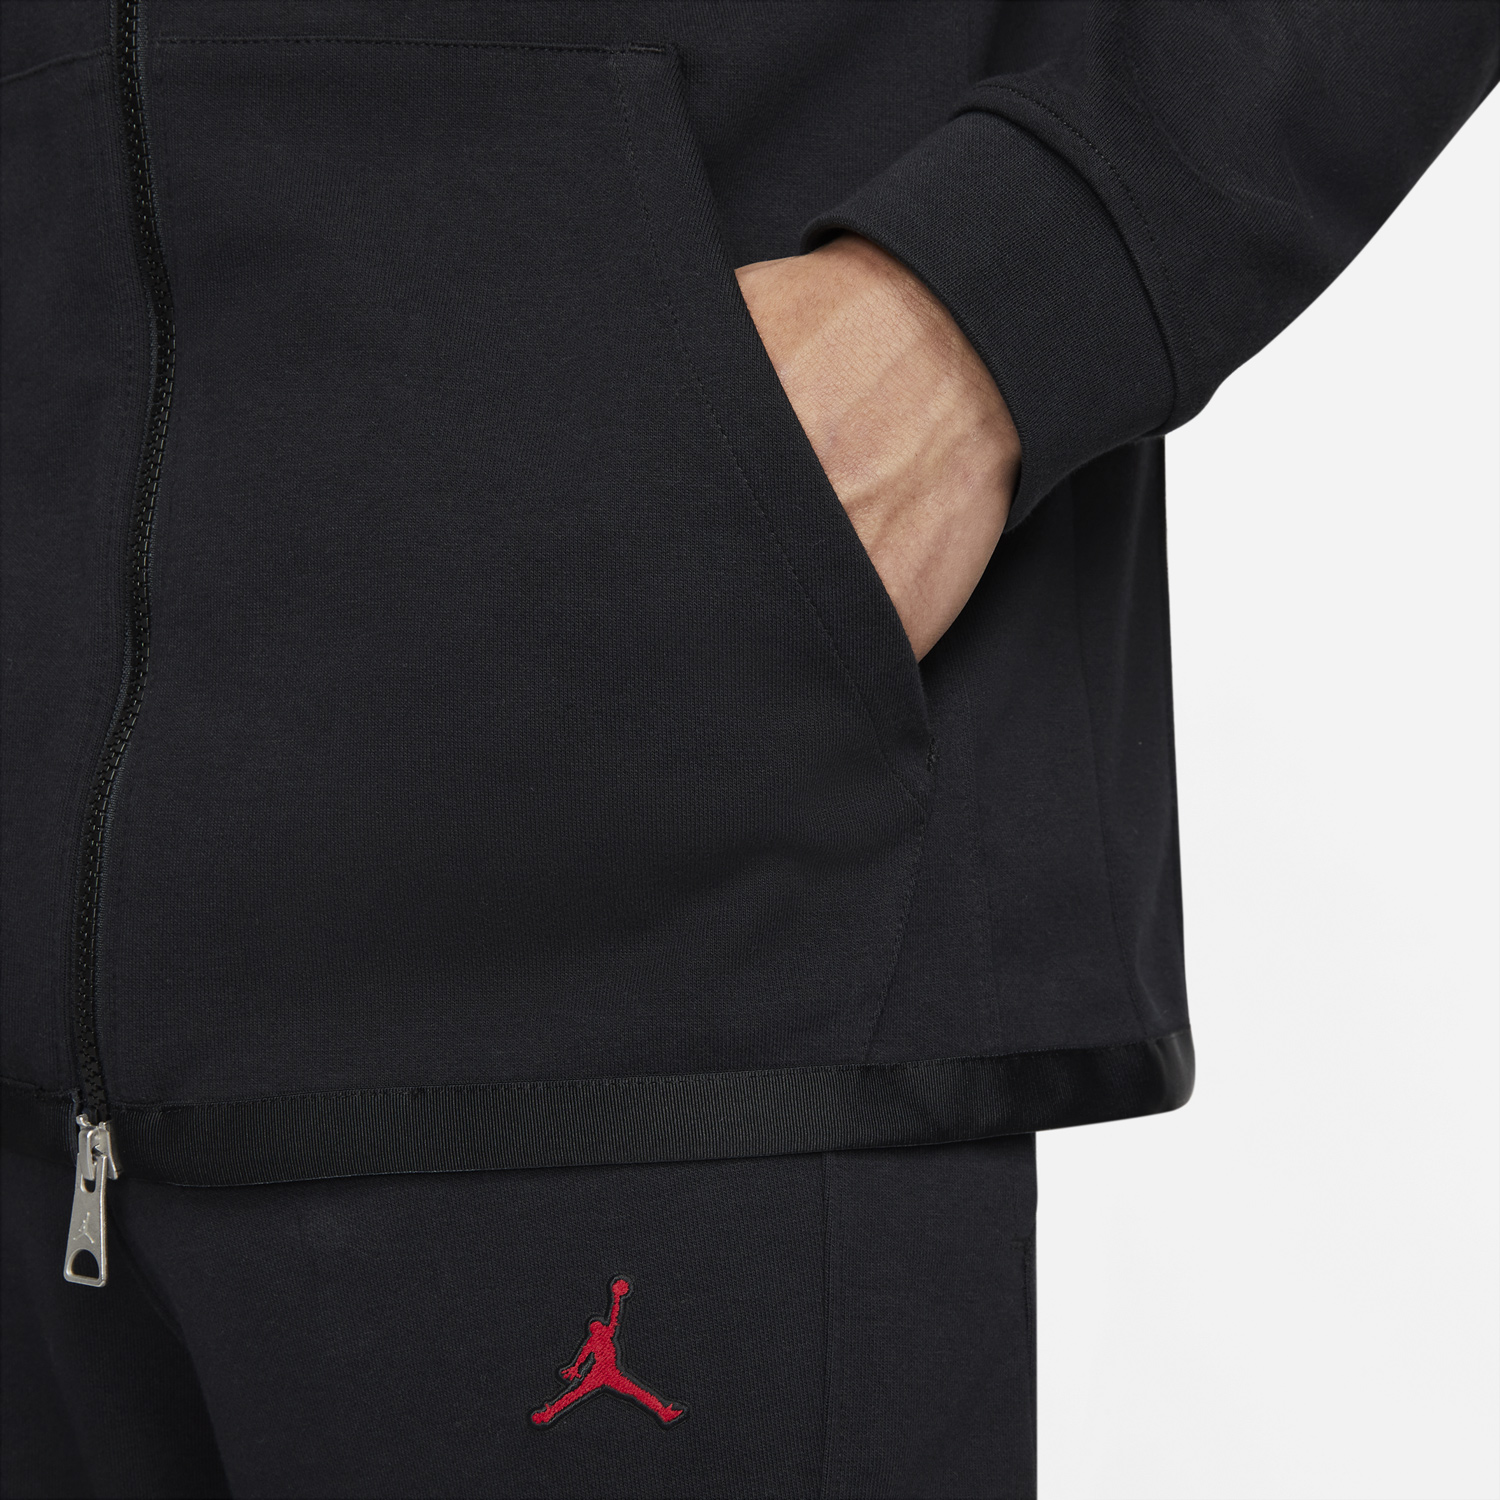 jordan-essential-warmup-jacket-black-red-4